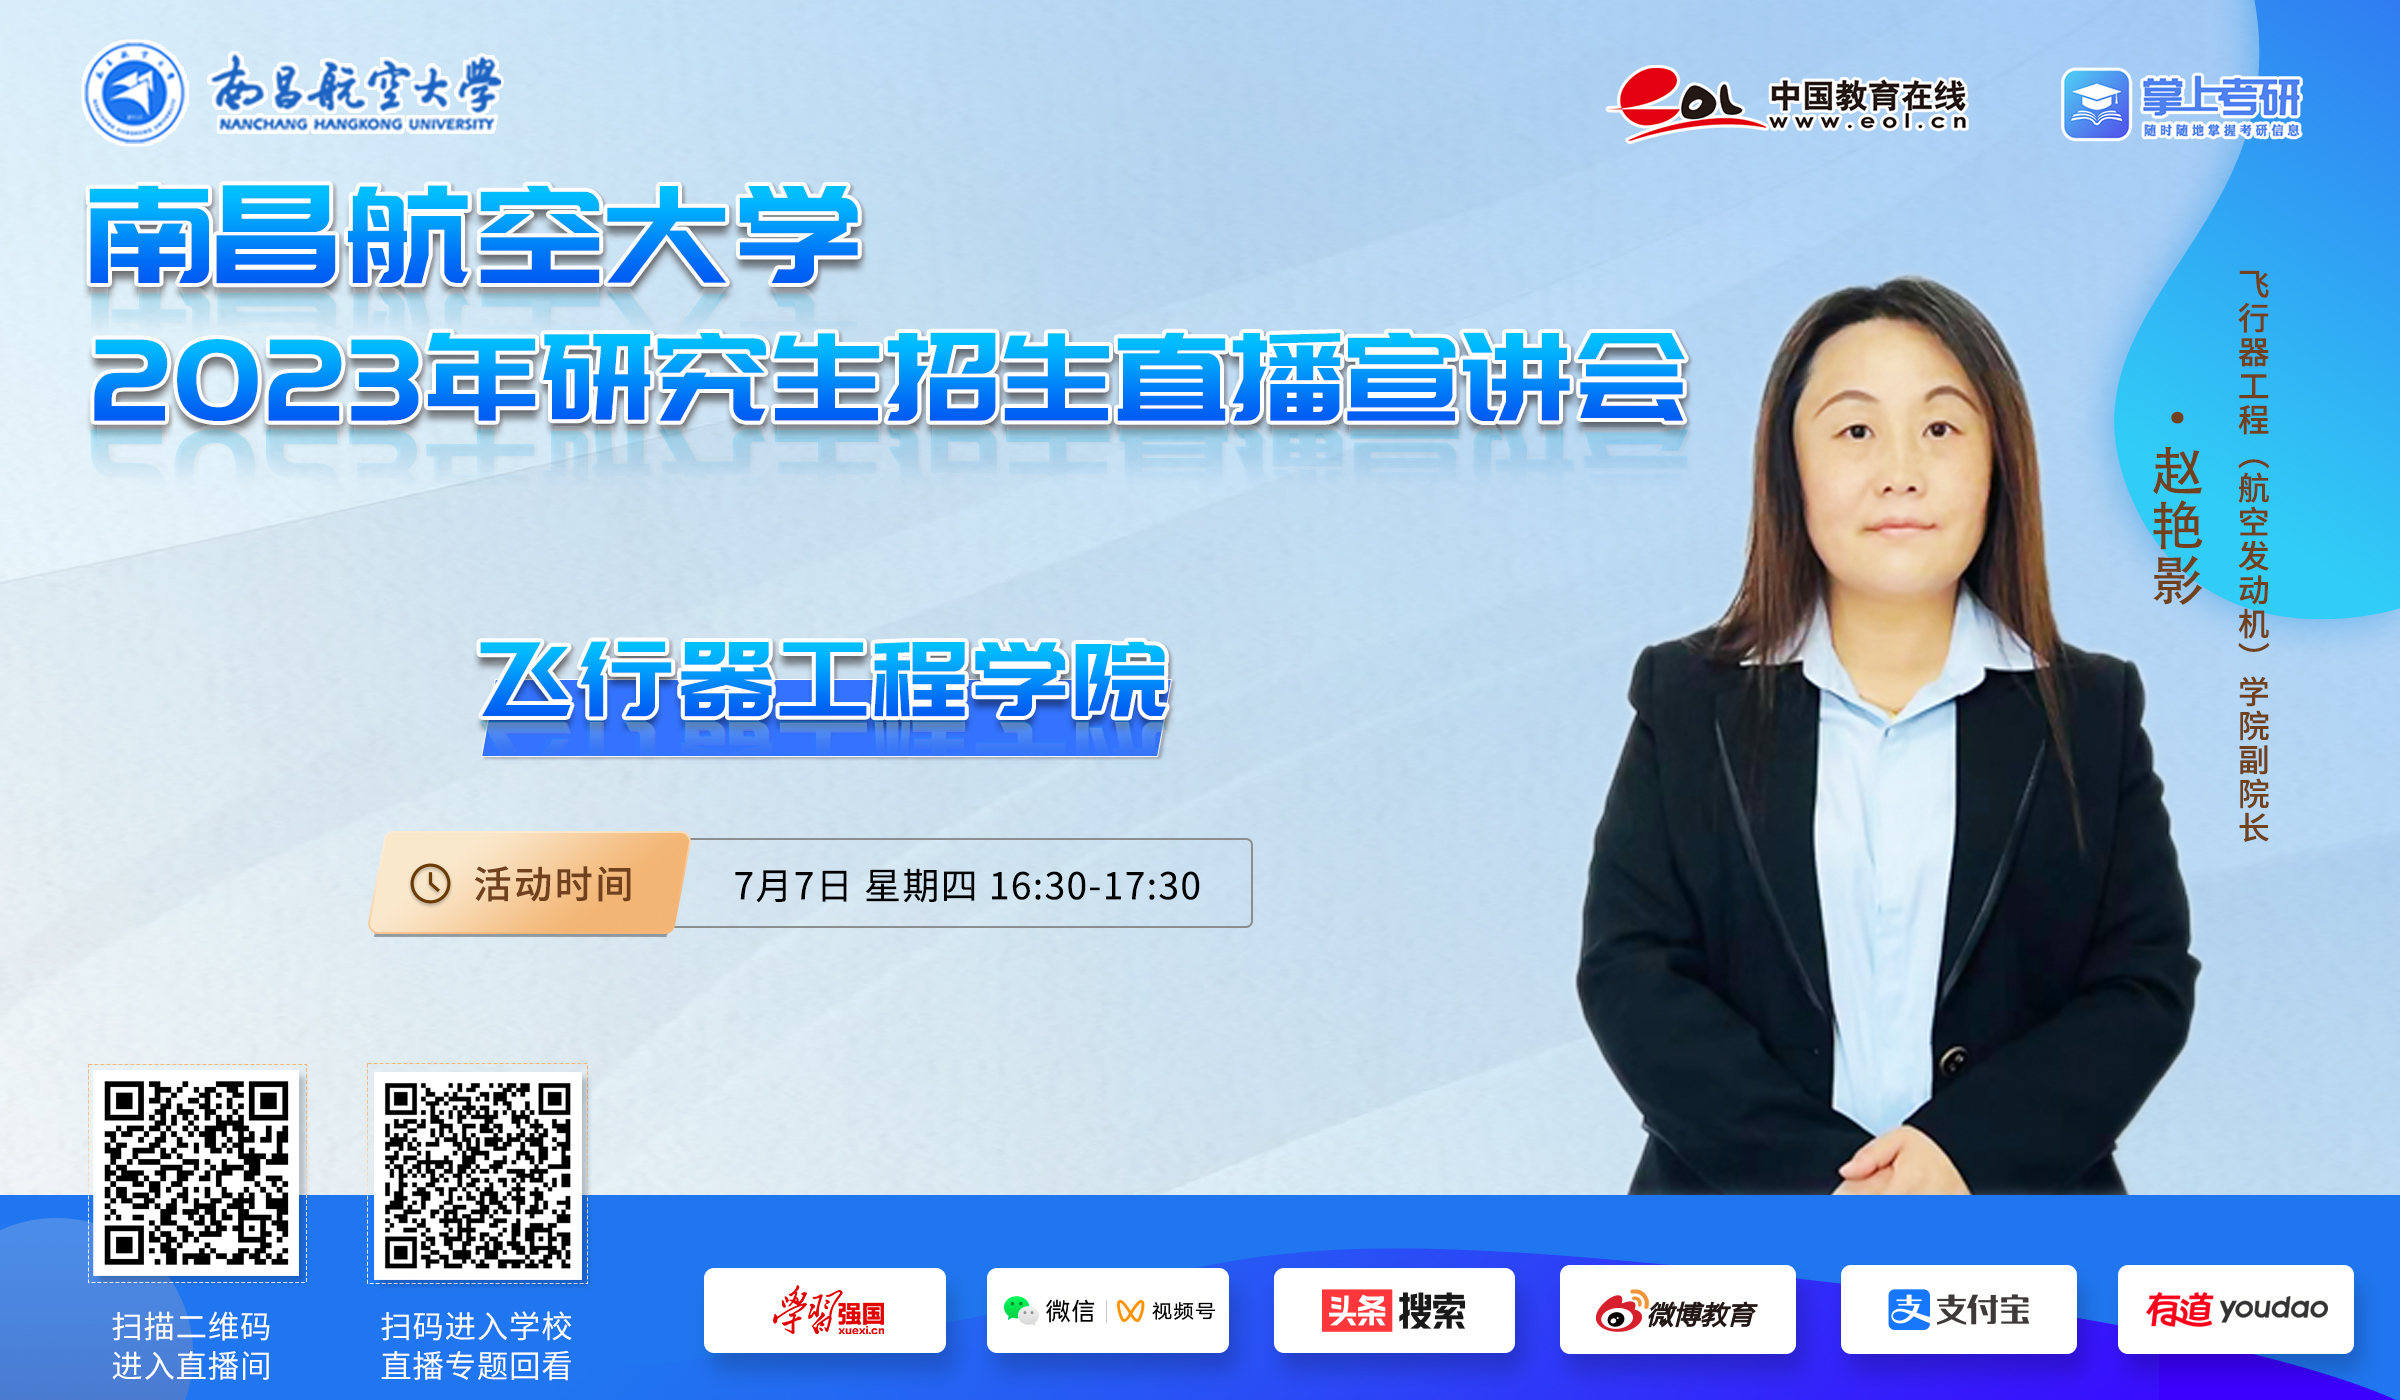 南京航空航天大学召开2018年教师发展与智慧教学研讨会 | 中国招生考试网